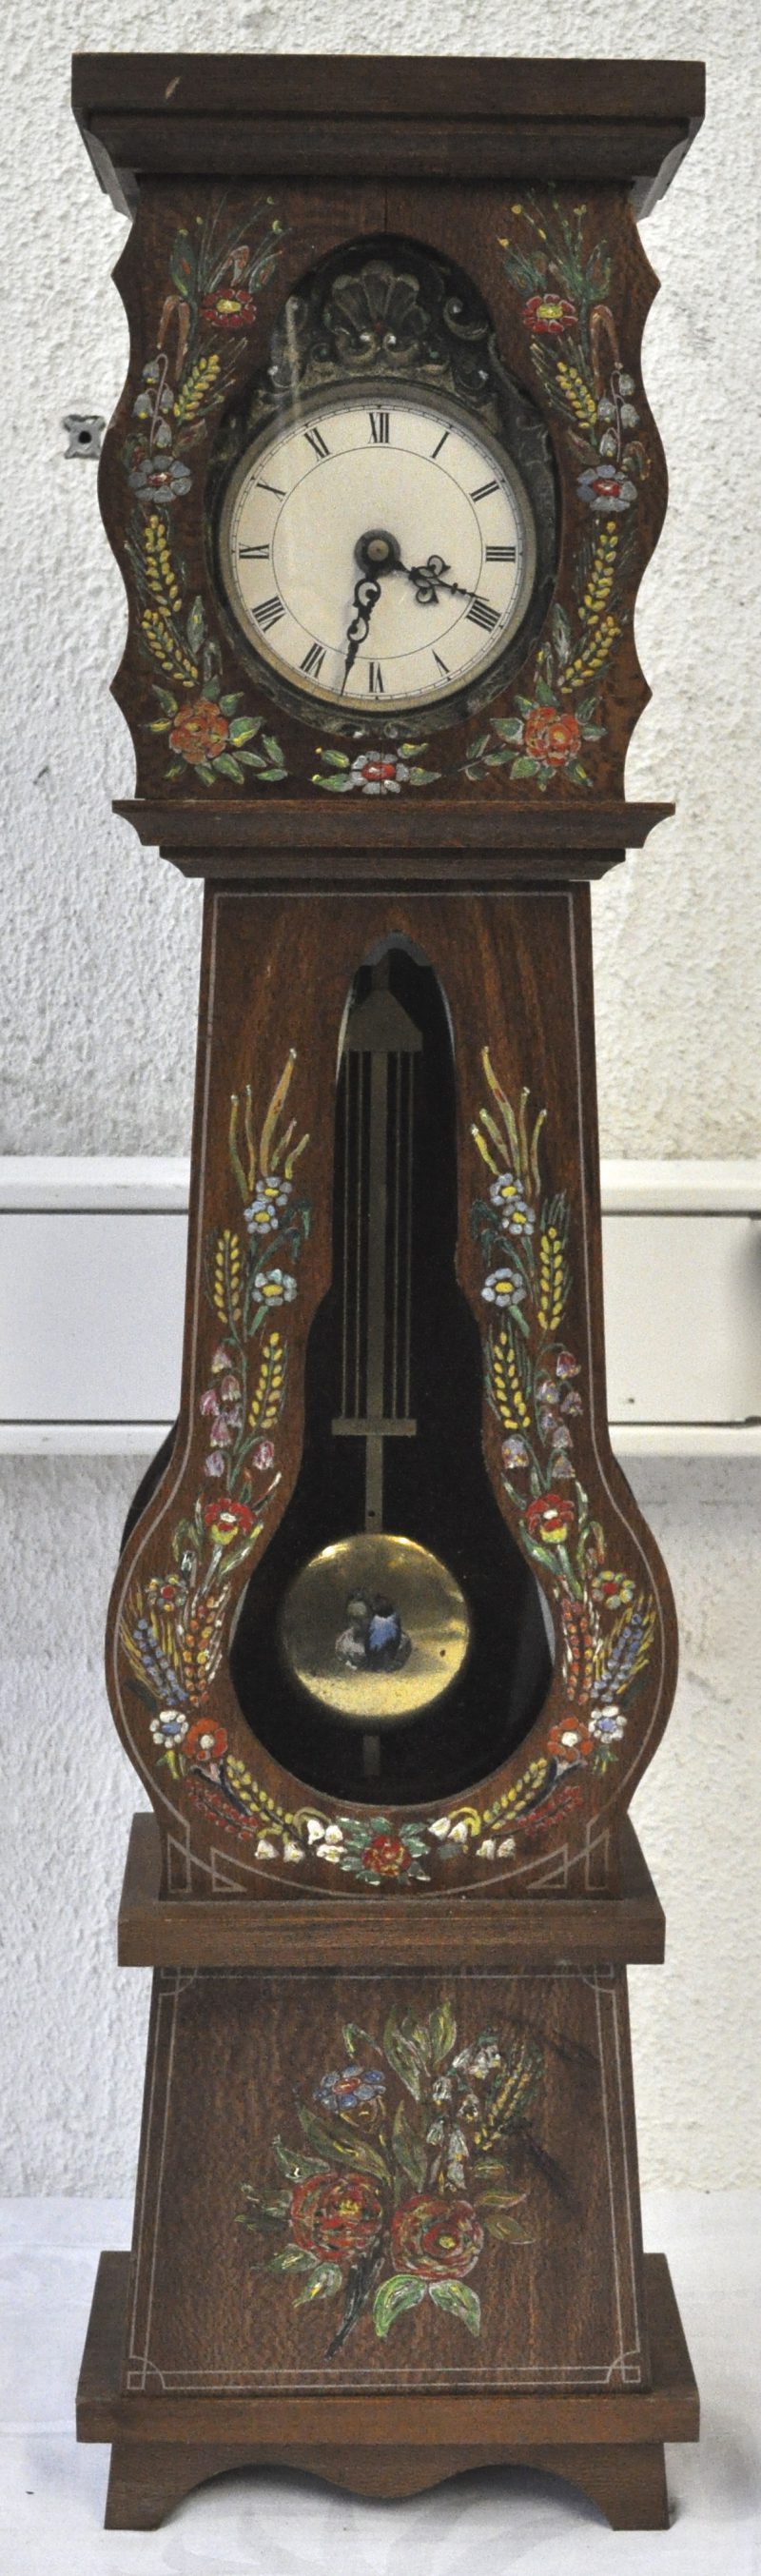 Een miniatuur staande klok met een handgeschilderd meerkleurig bloemendecor versierd.